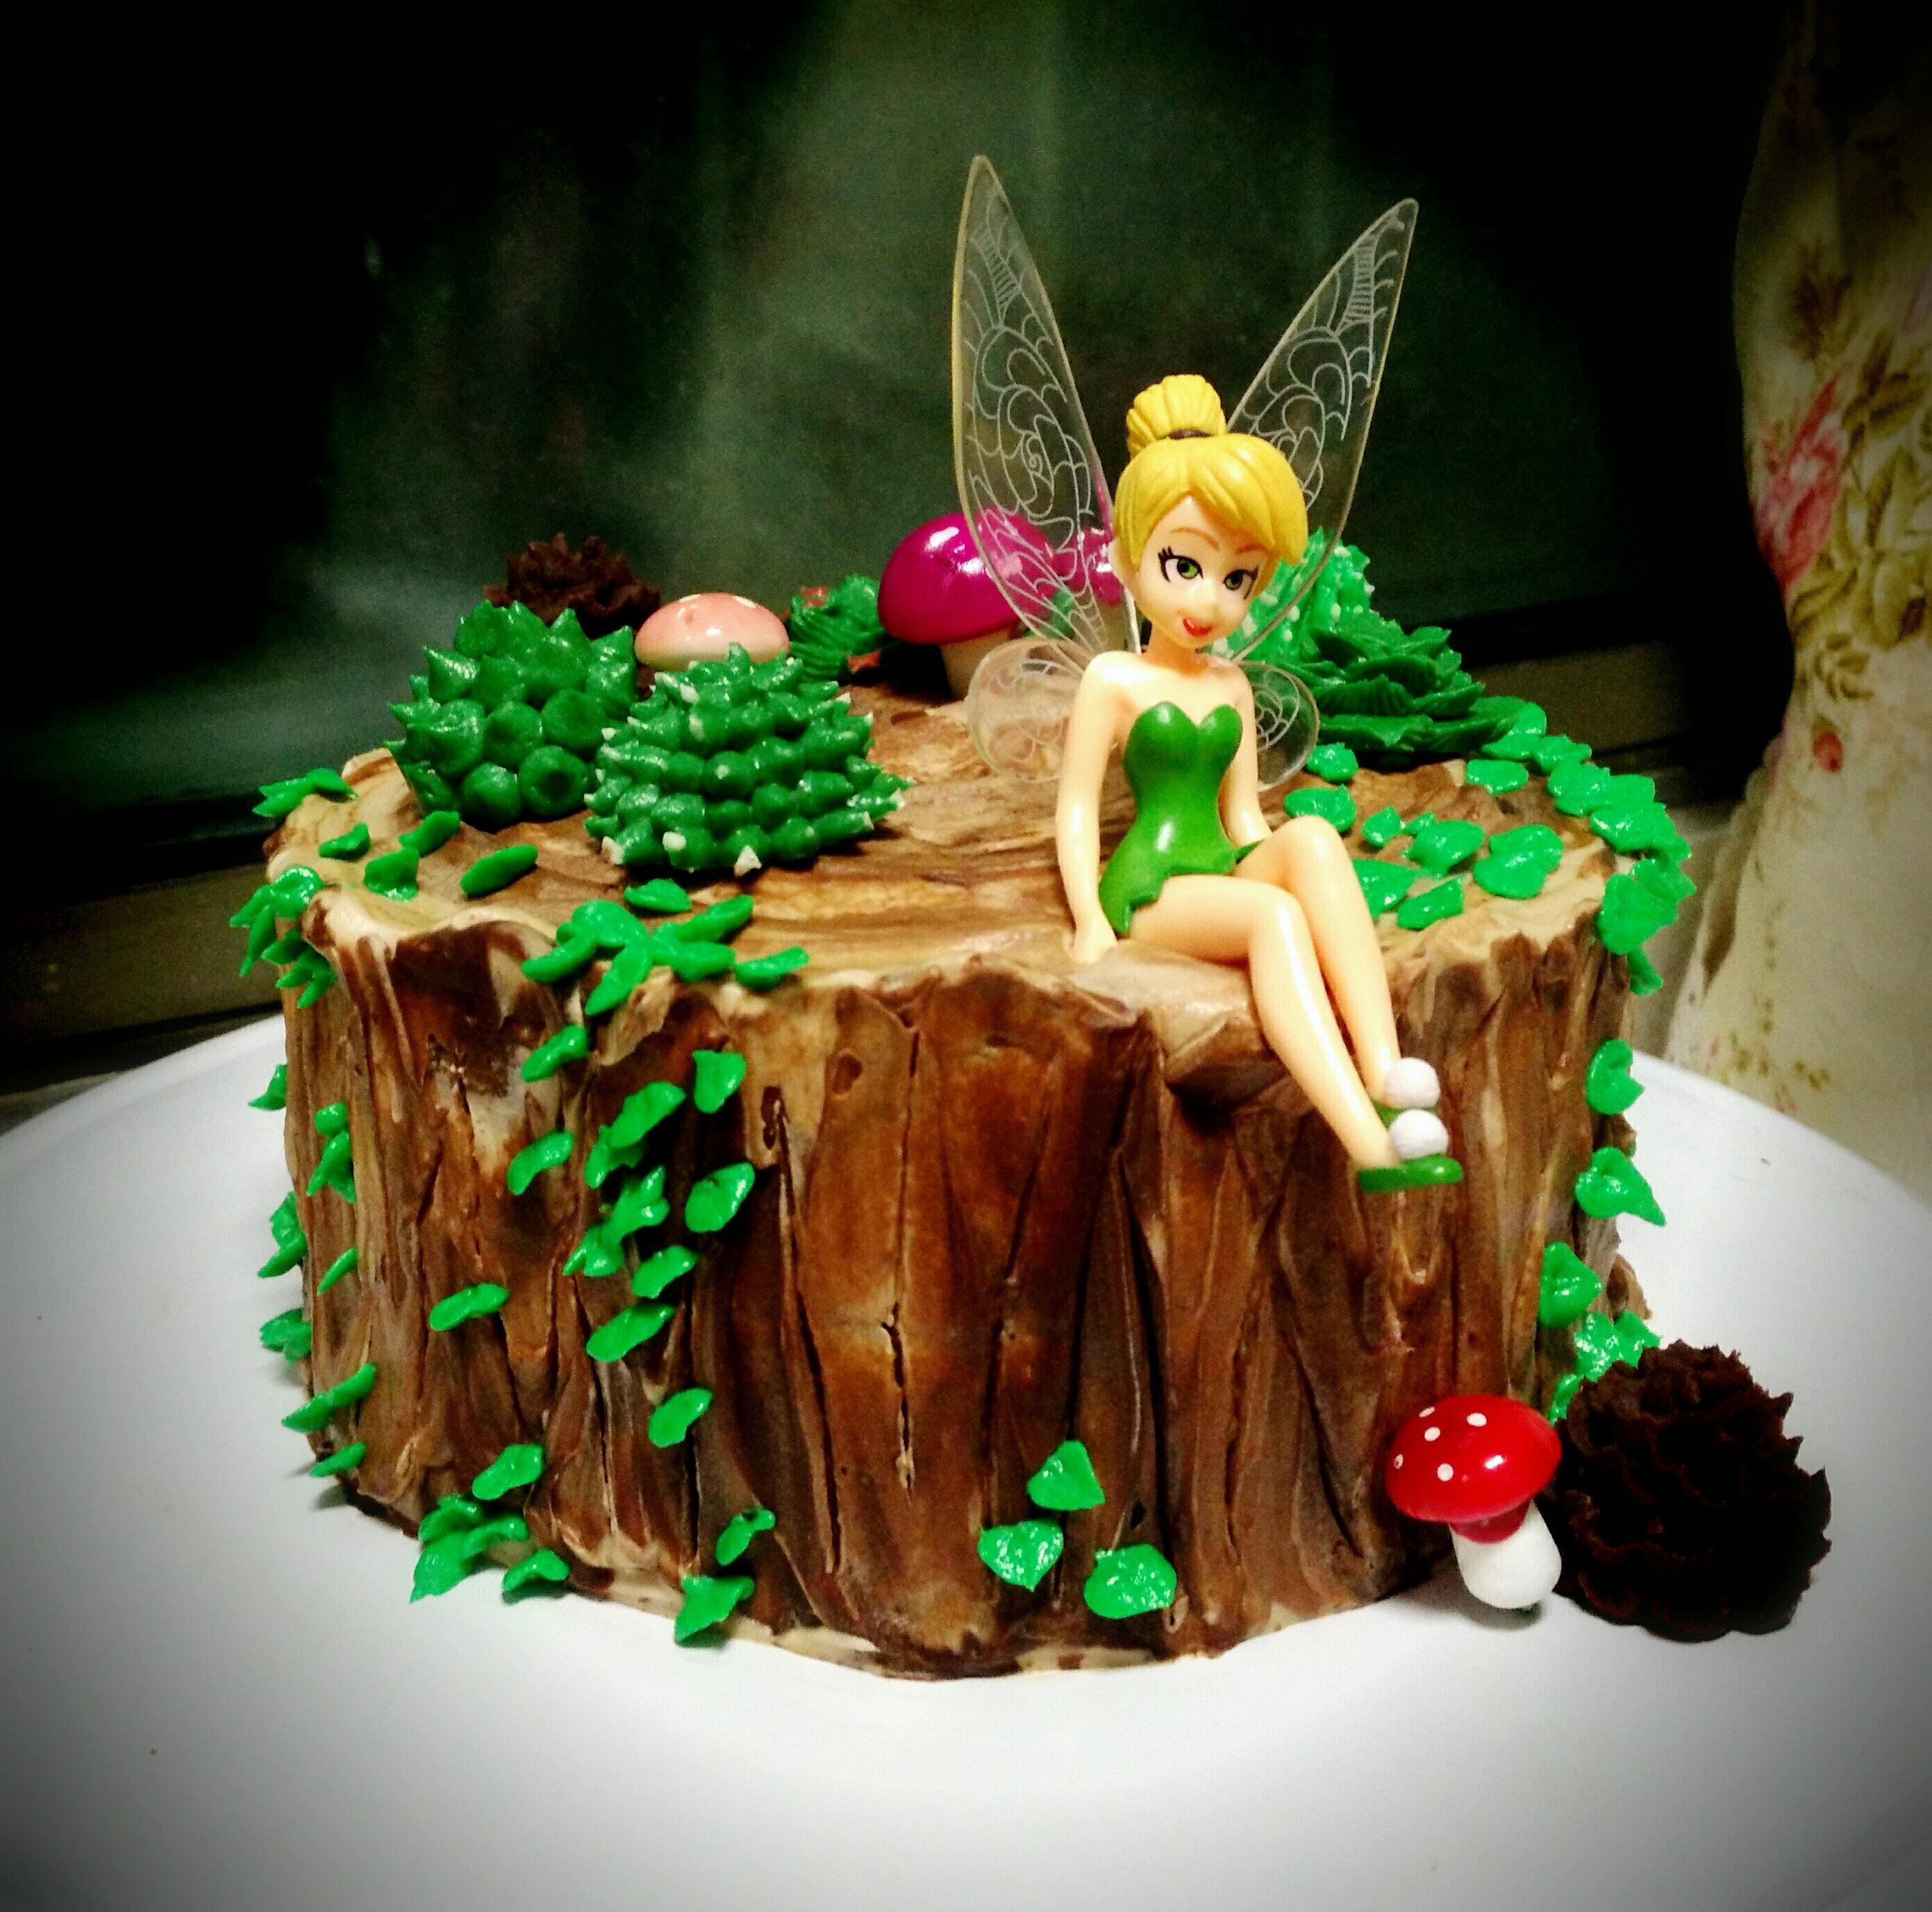 树桩蛋糕